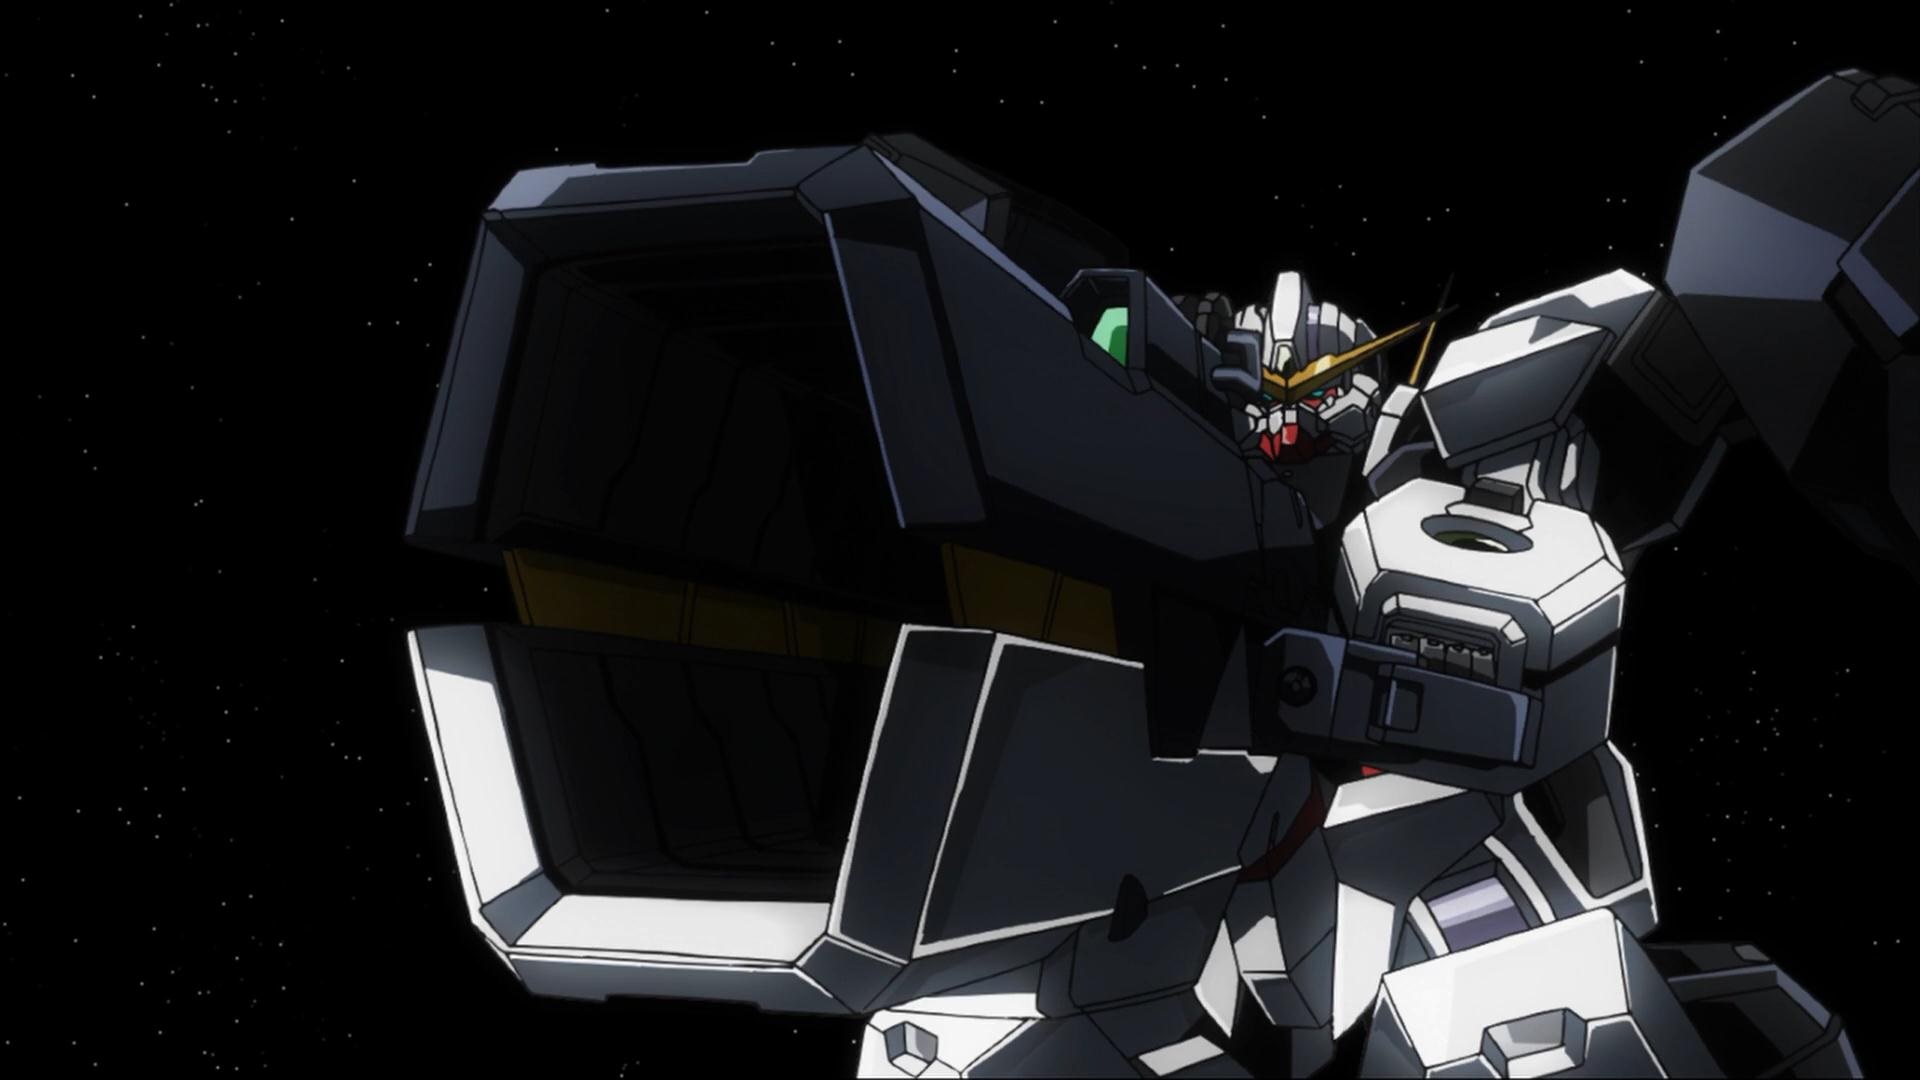 Anime Mechs Super Robot Taisen Gundam Mobile Suit Gundam 00 Artwork Digital Art Anime Screenshot Gun 1920x1080